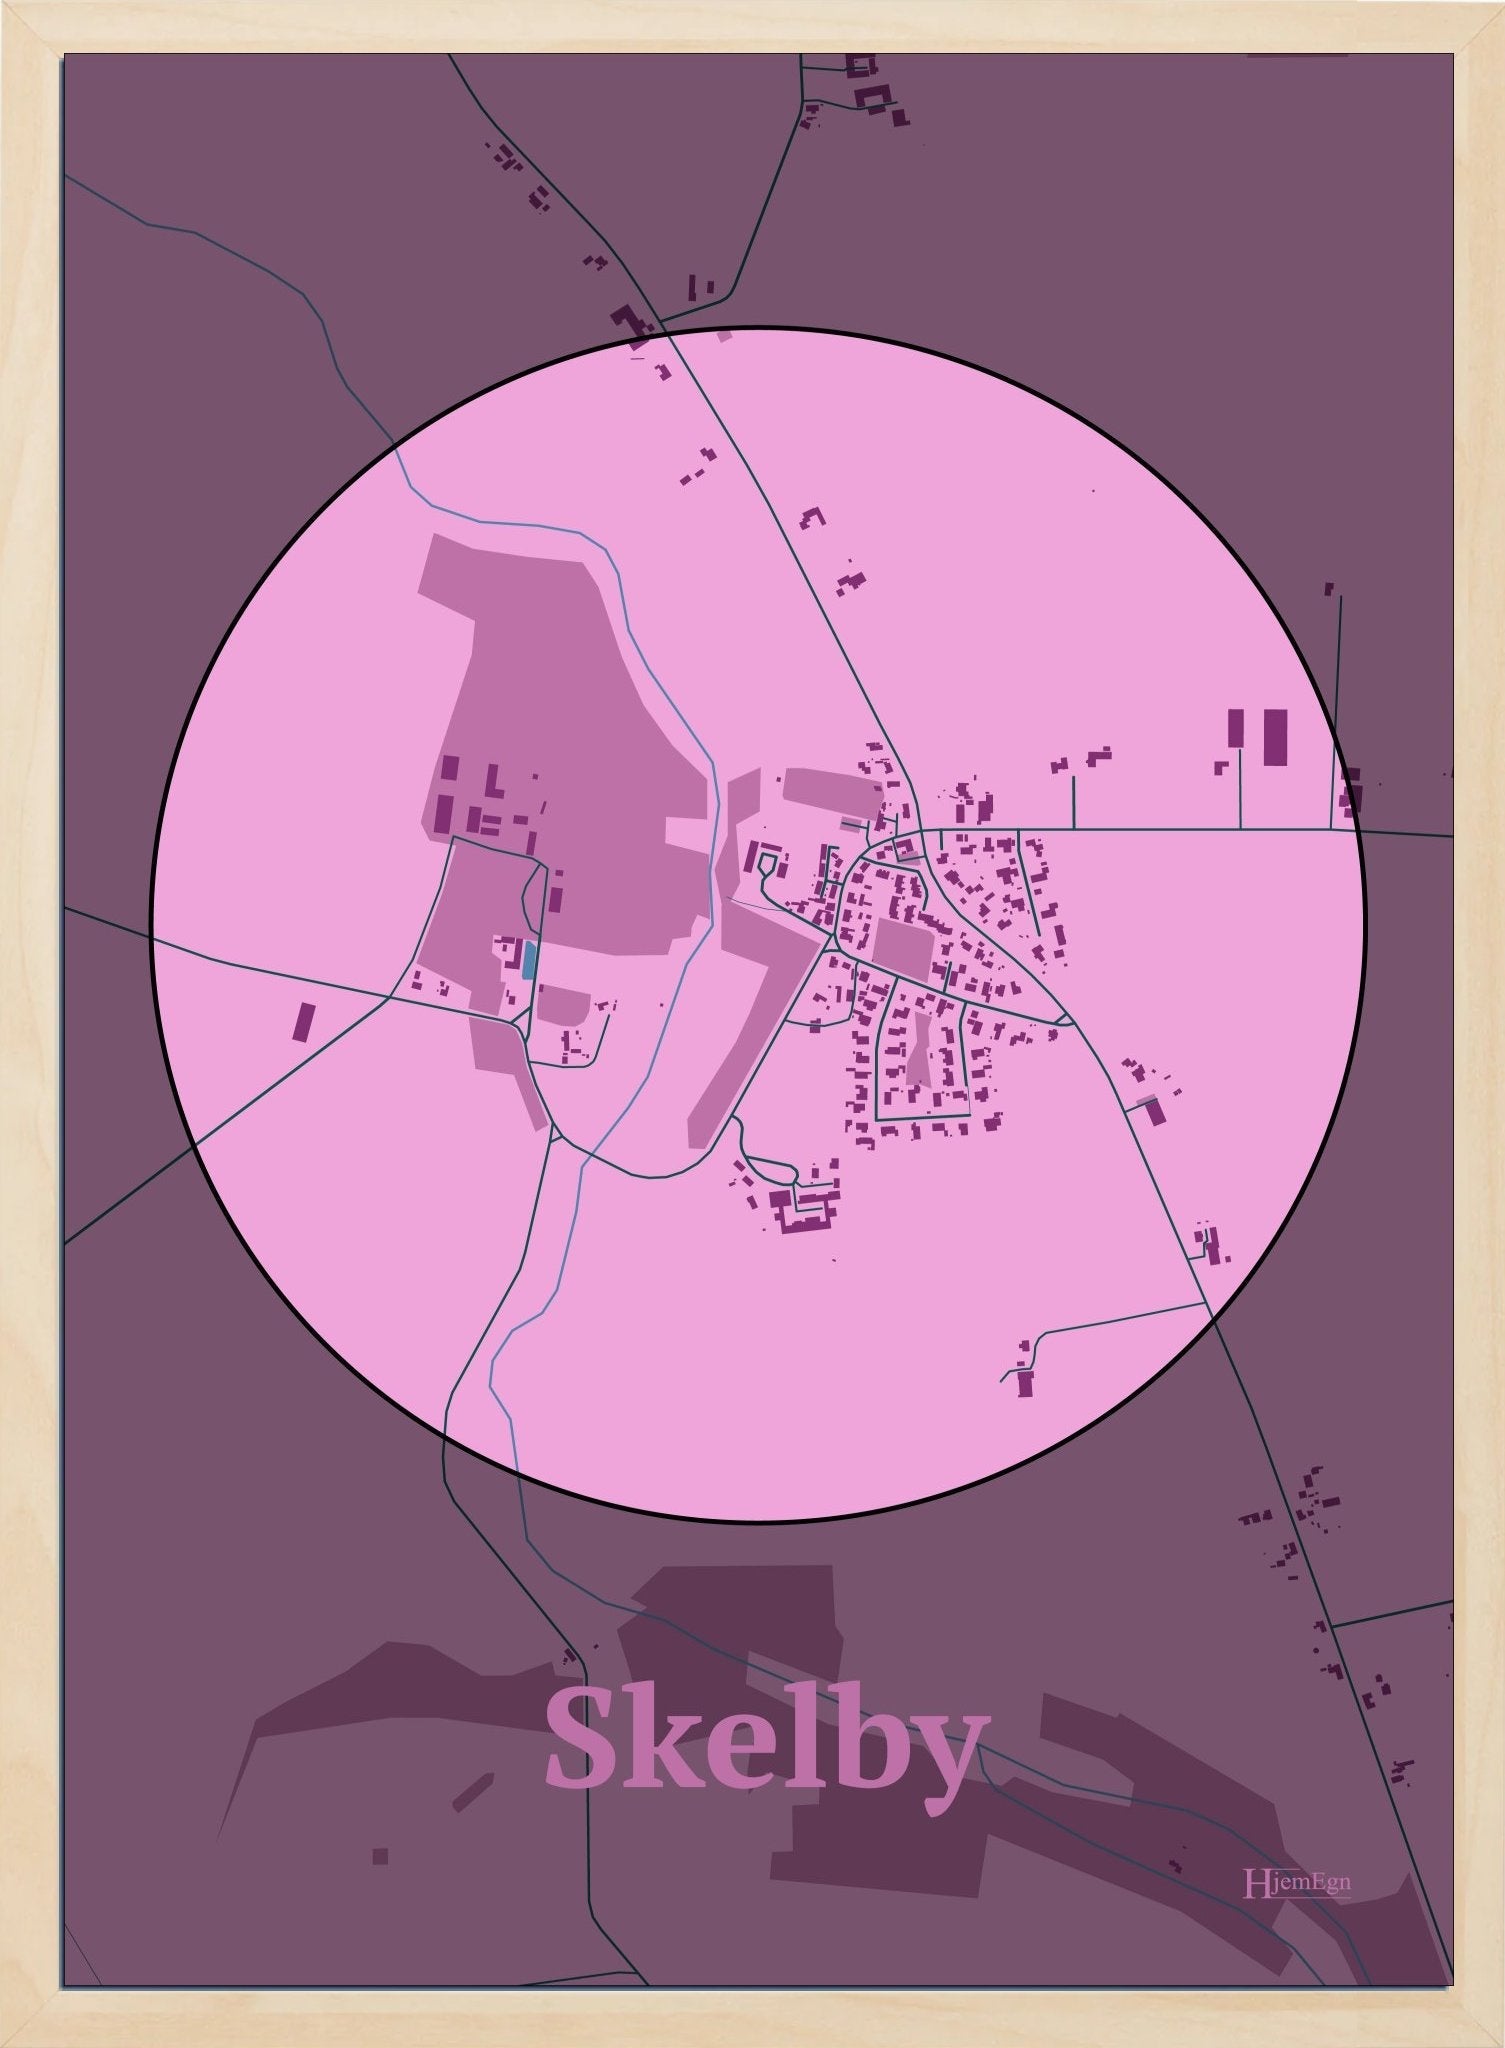 Skelby plakat i farve pastel rød og HjemEgn.dk design centrum. Design bykort for Skelby